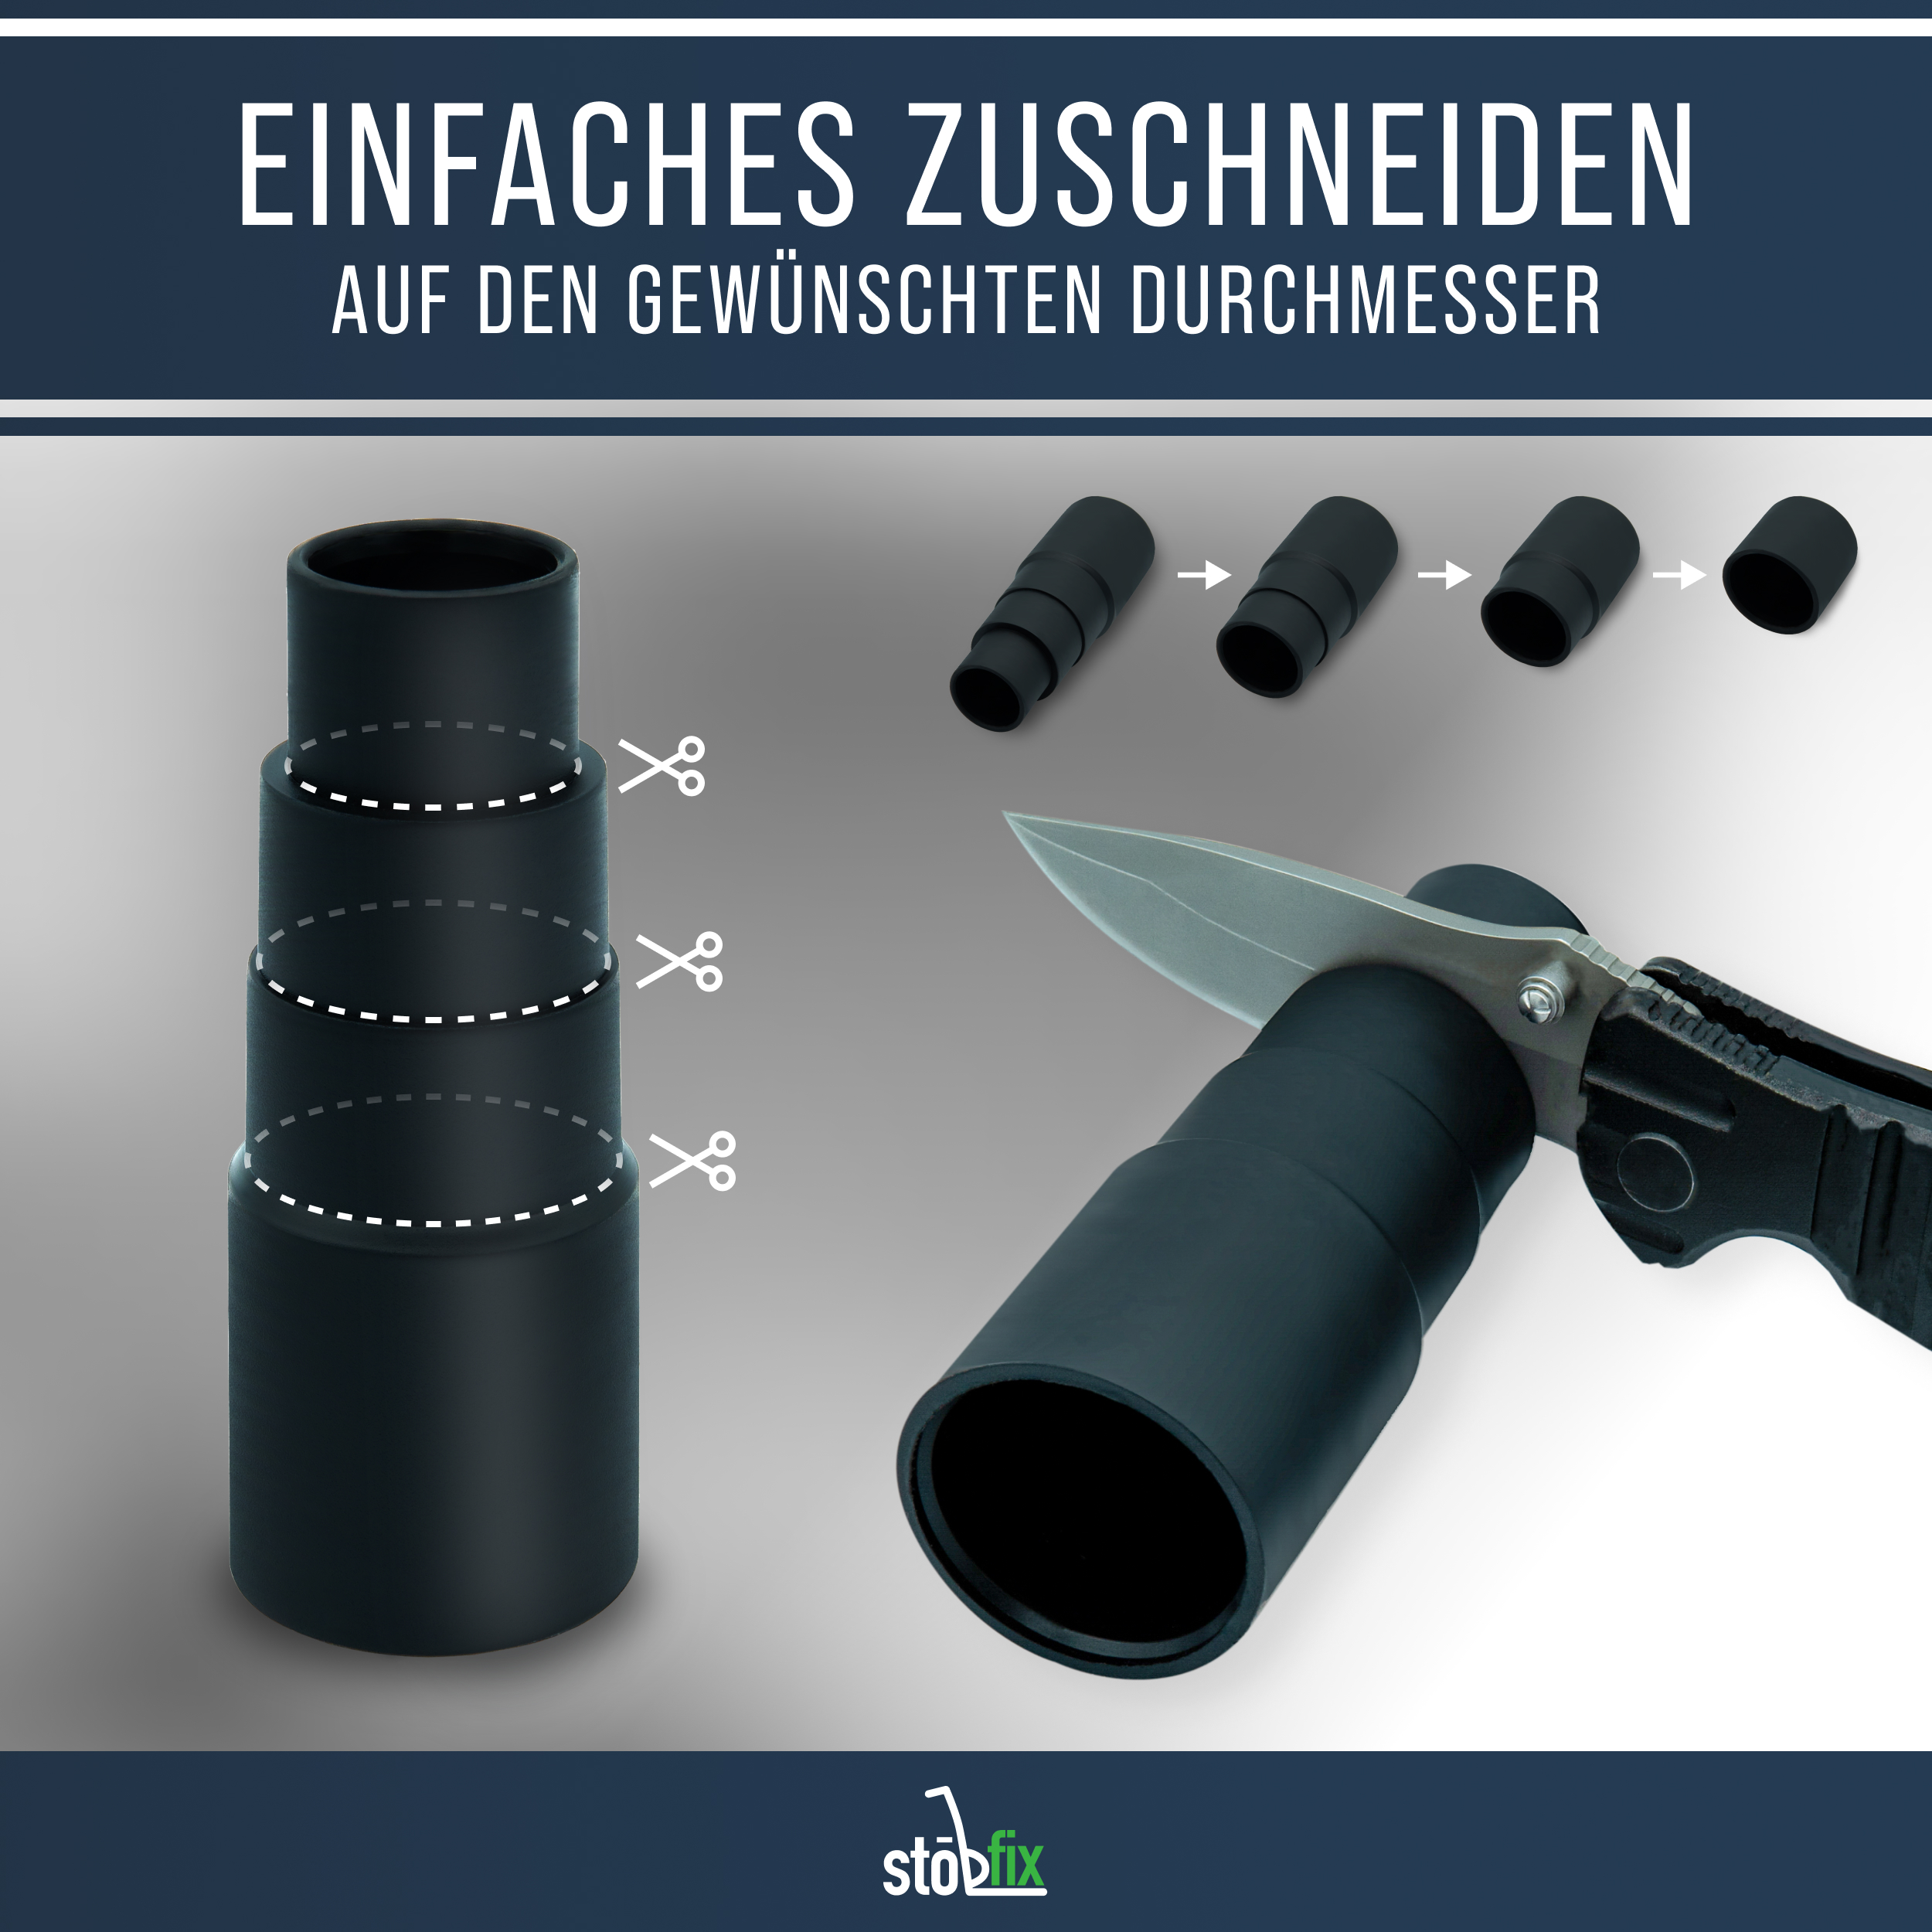 Schlauchadapter [2er Set] - Universeller Staubsaugeradapter u. a. für Geräte von Bosch, Makita, Kärcher